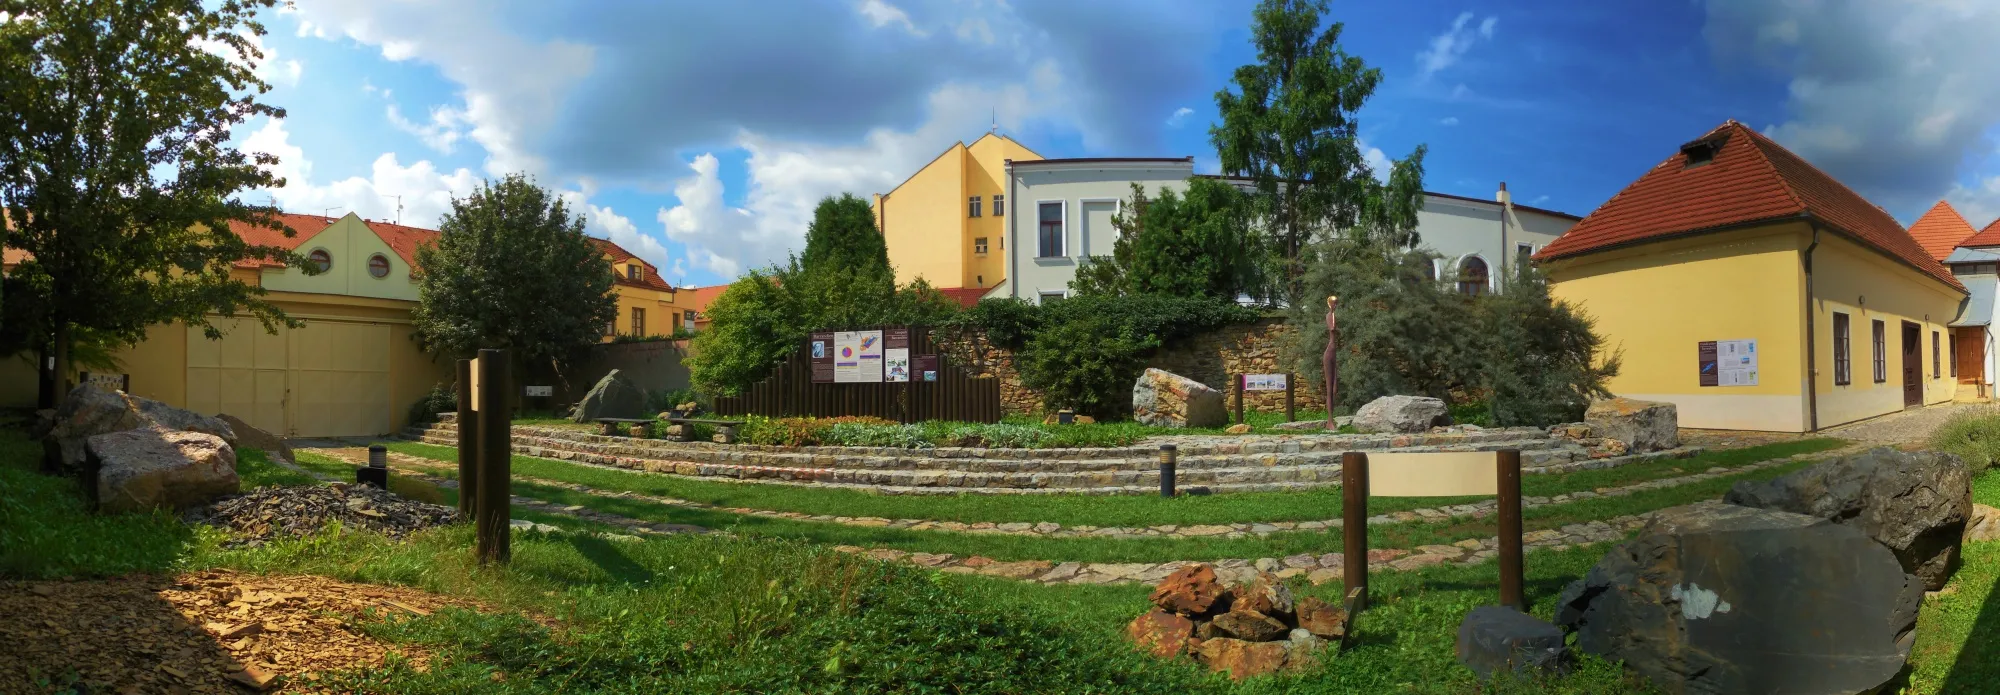 Photo showing: Geopark Barrandien - panoramatický pohled na venkovní expozici typických hornin Barrandienu, Muzeum Českého krasu v Berouně.